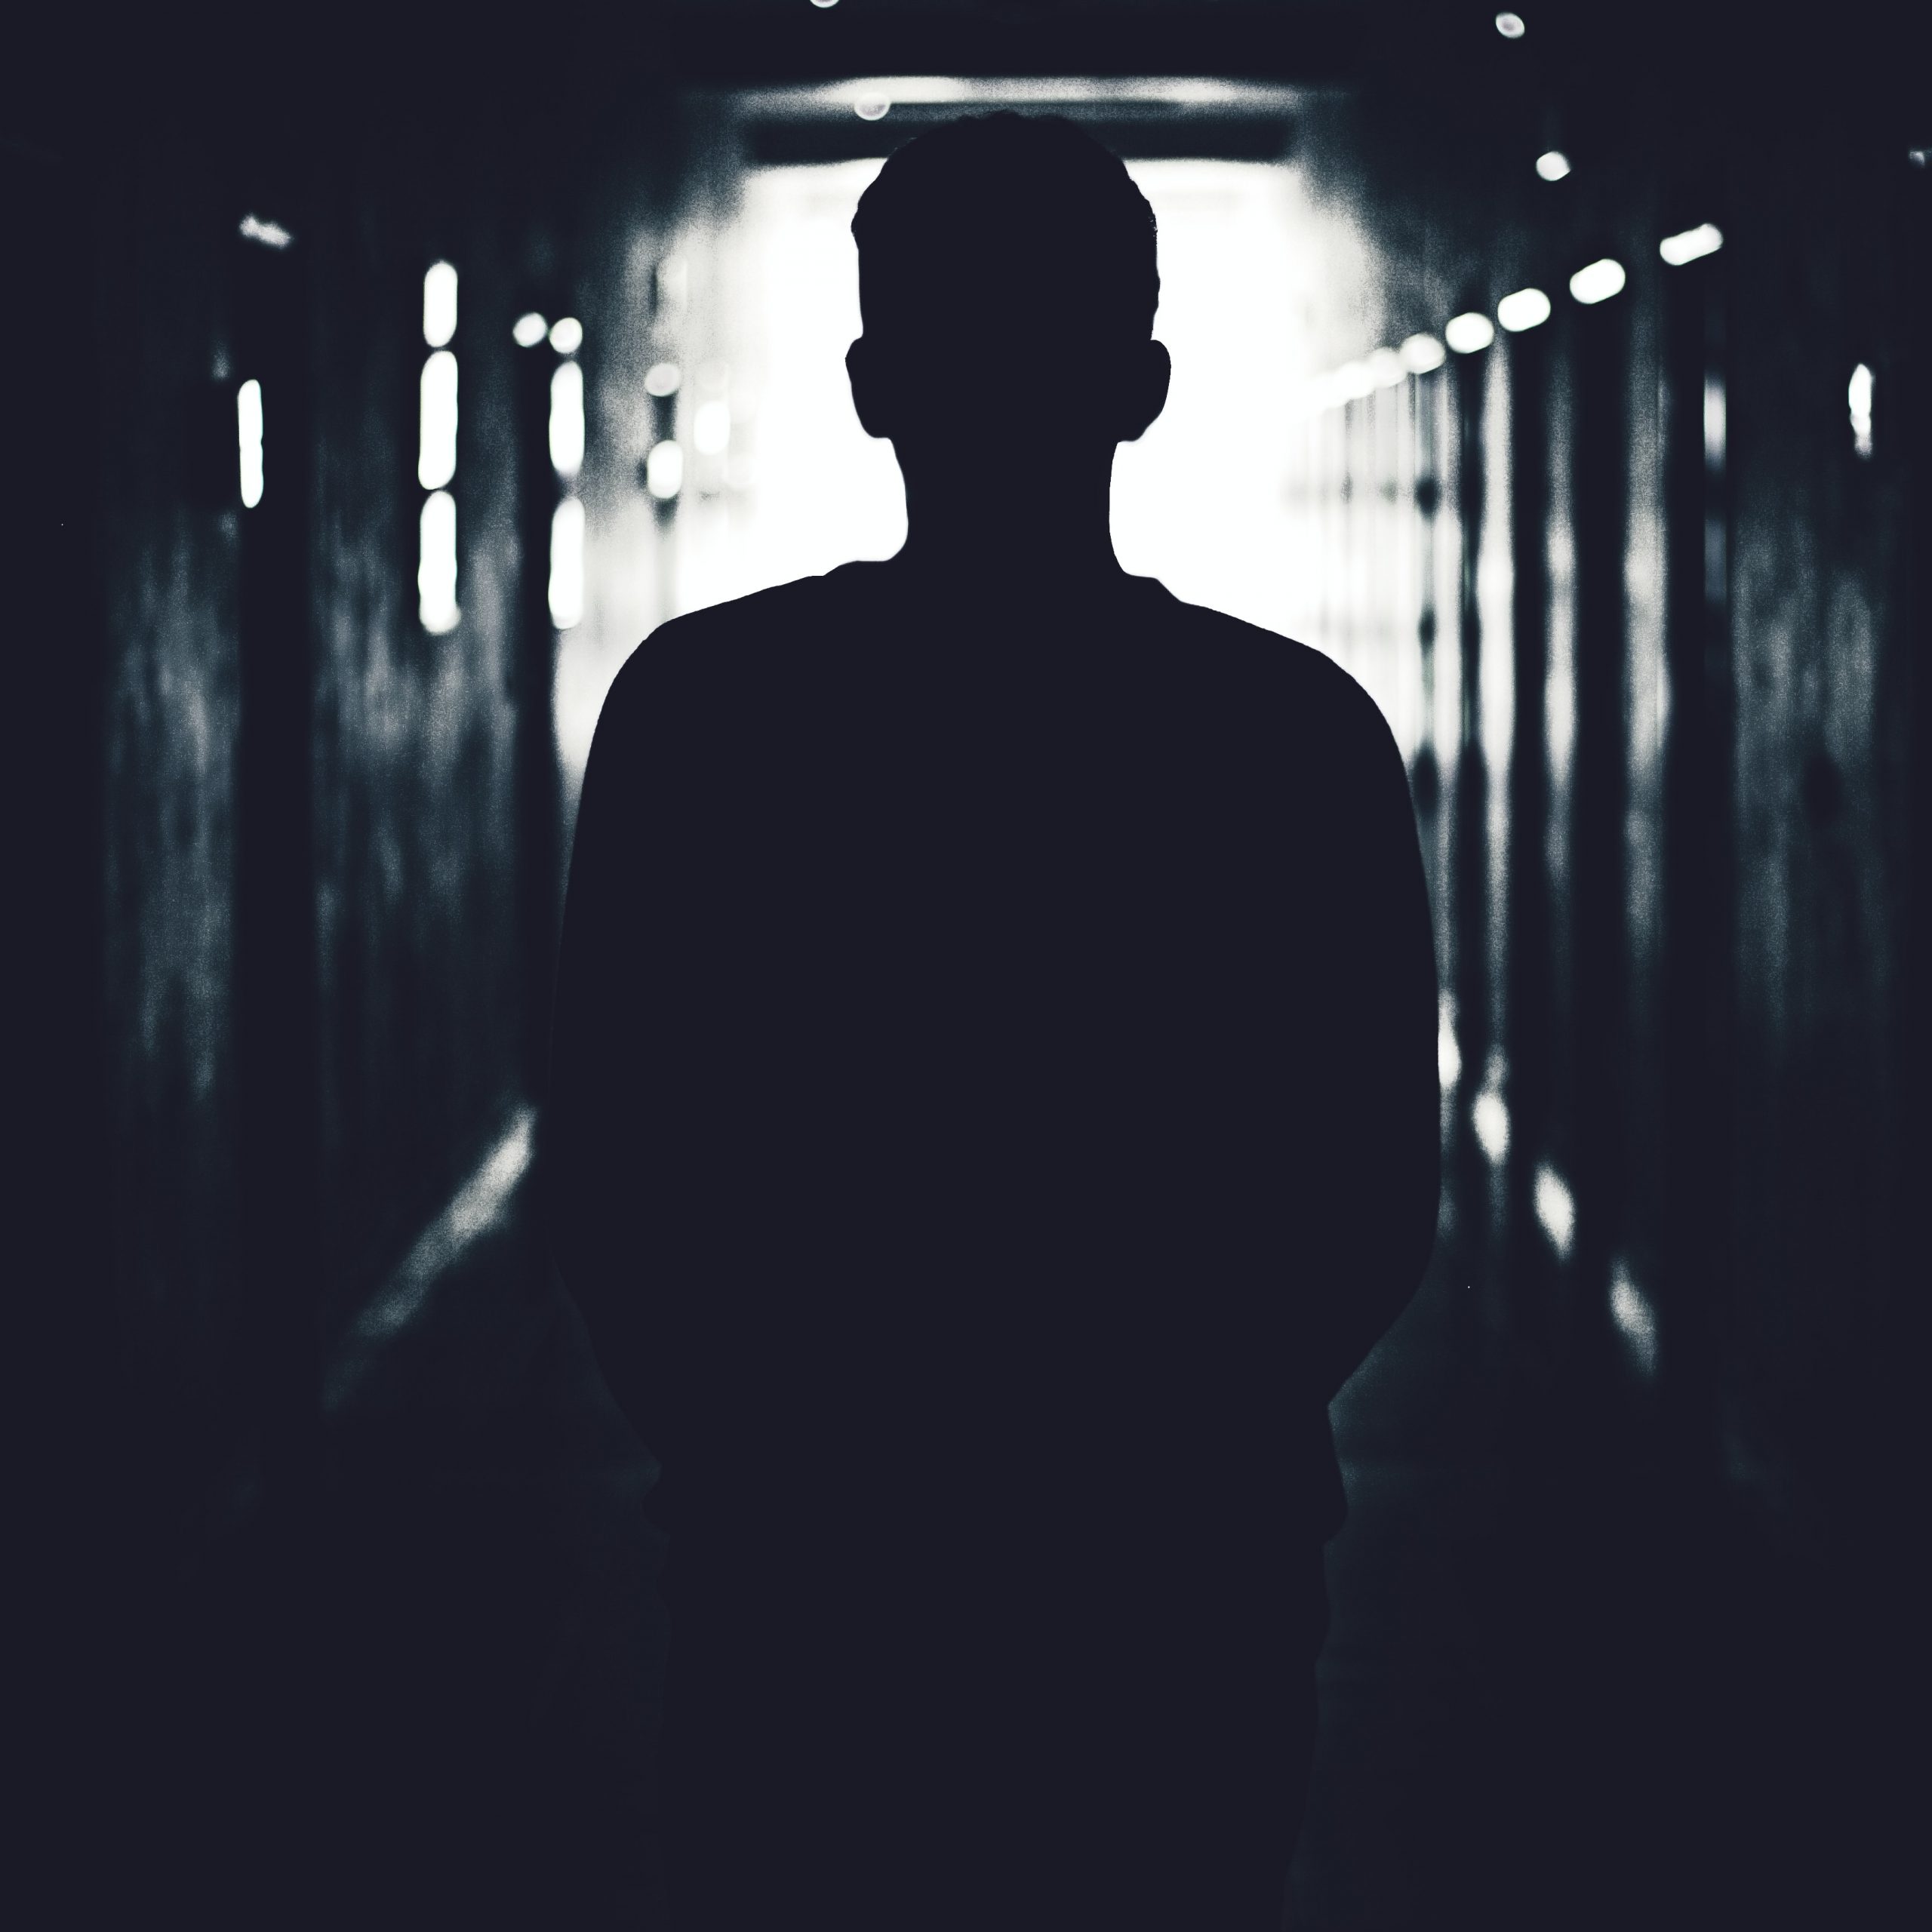 Man in dark tunnel